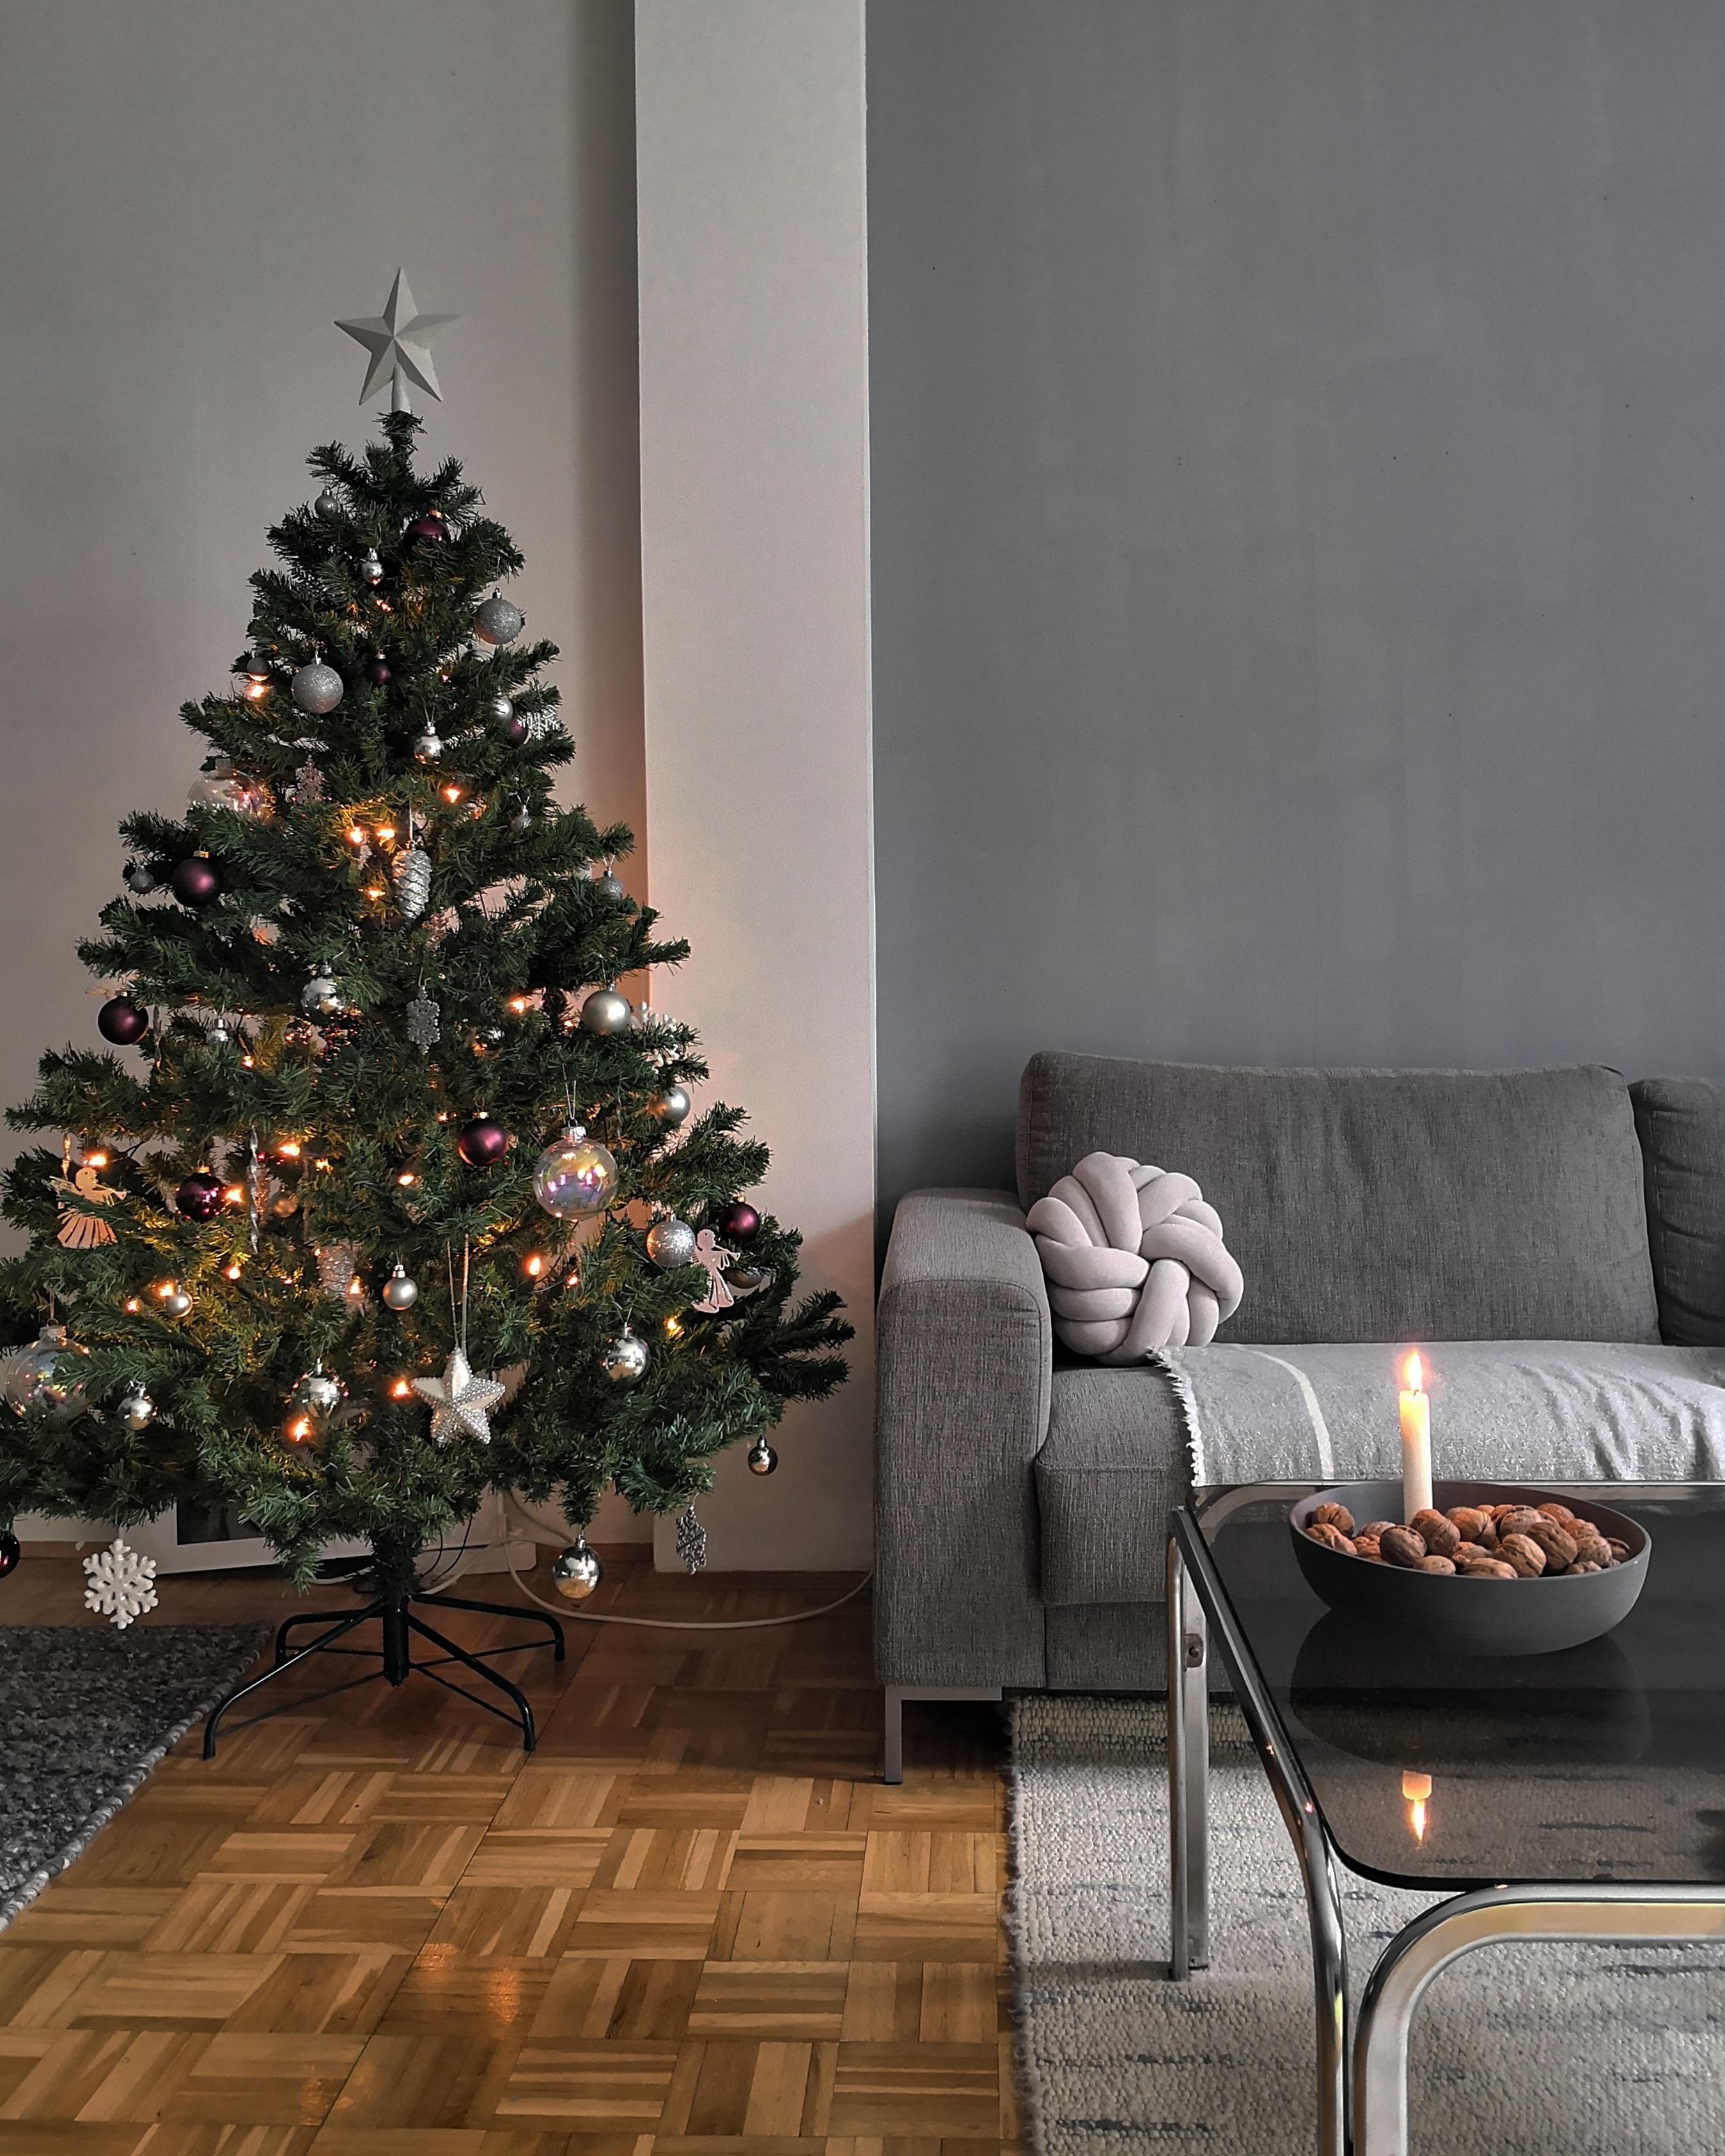 #weihnachtszeit #weihnachtsbaum #adventszeit #wohnzimmer #hygge #livingroom #cozy #christmas 